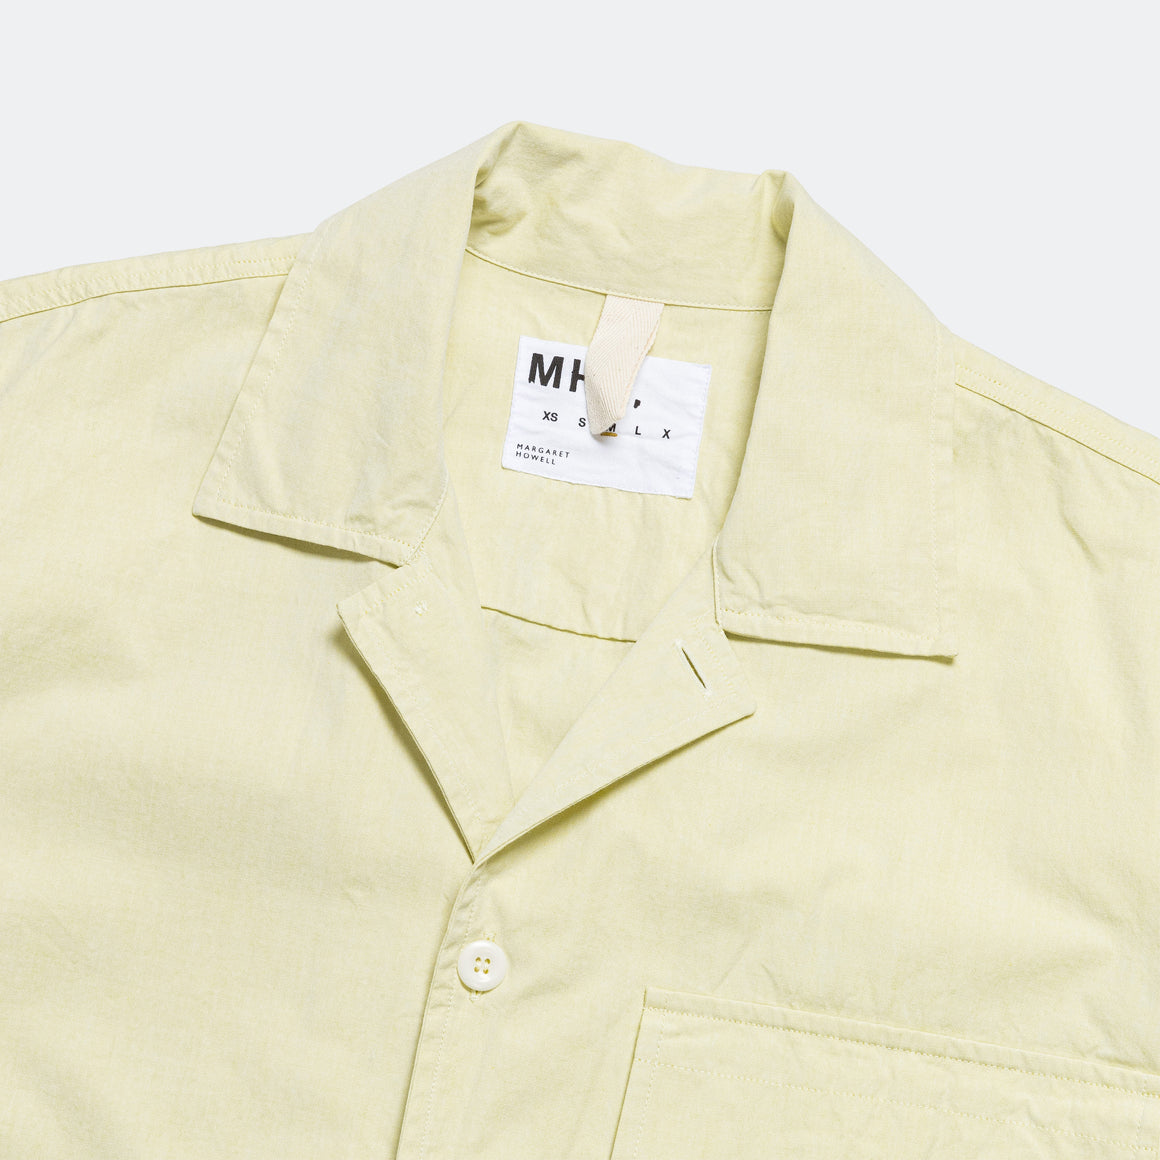 S/S Flap Pocket Shirt - Pale Yellow Yarn Dye Cotton Canvas (LCP)